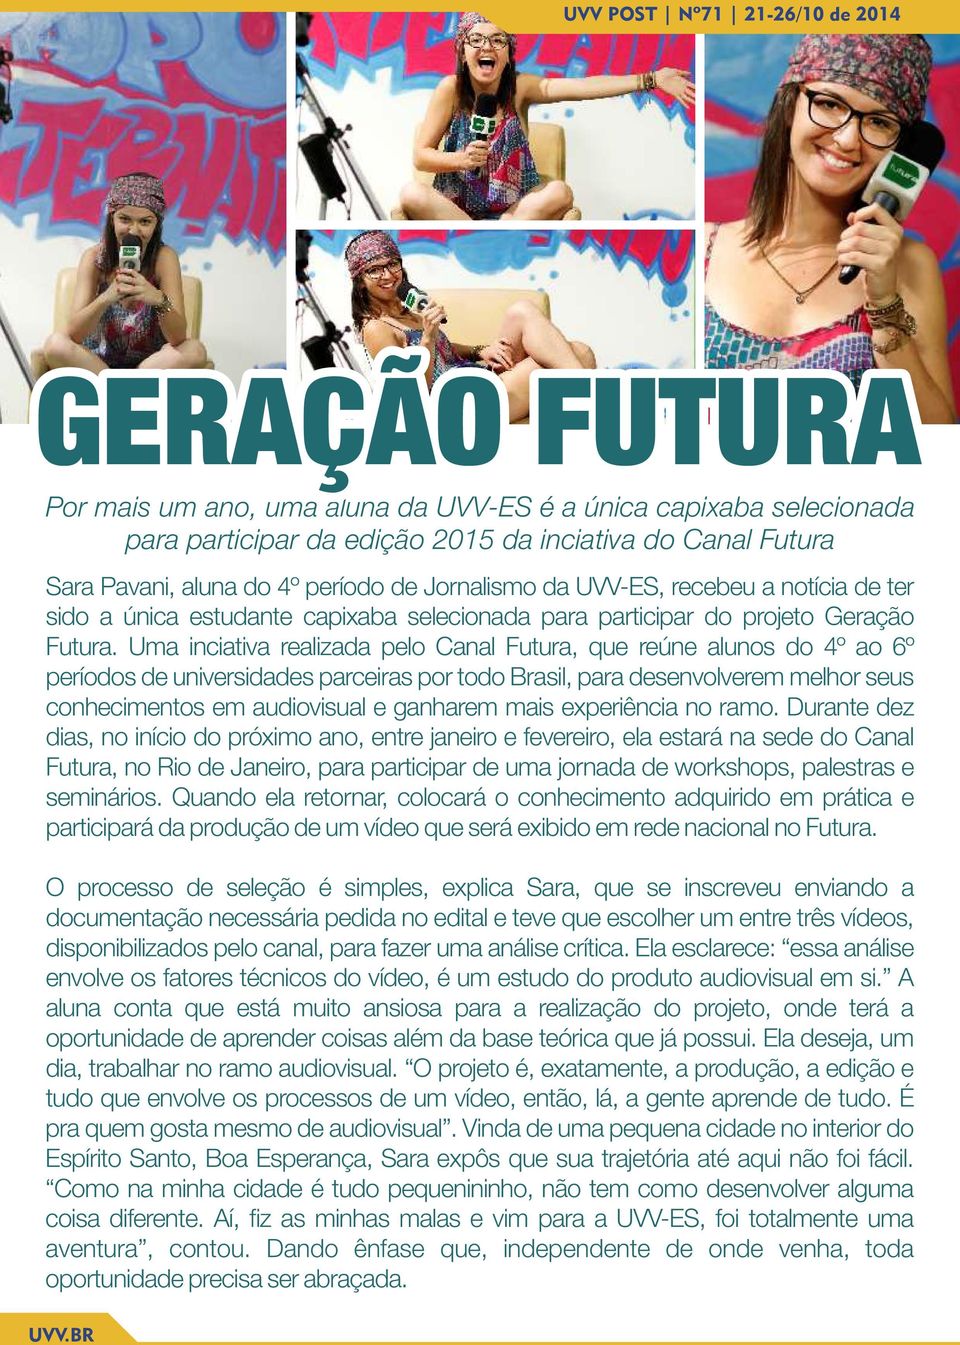 Uma inciativa realizada pelo Canal Futura, que reúne alunos do 4º ao 6º períodos de universidades parceiras por todo Brasil, para desenvolverem melhor seus conhecimentos em audiovisual e ganharem